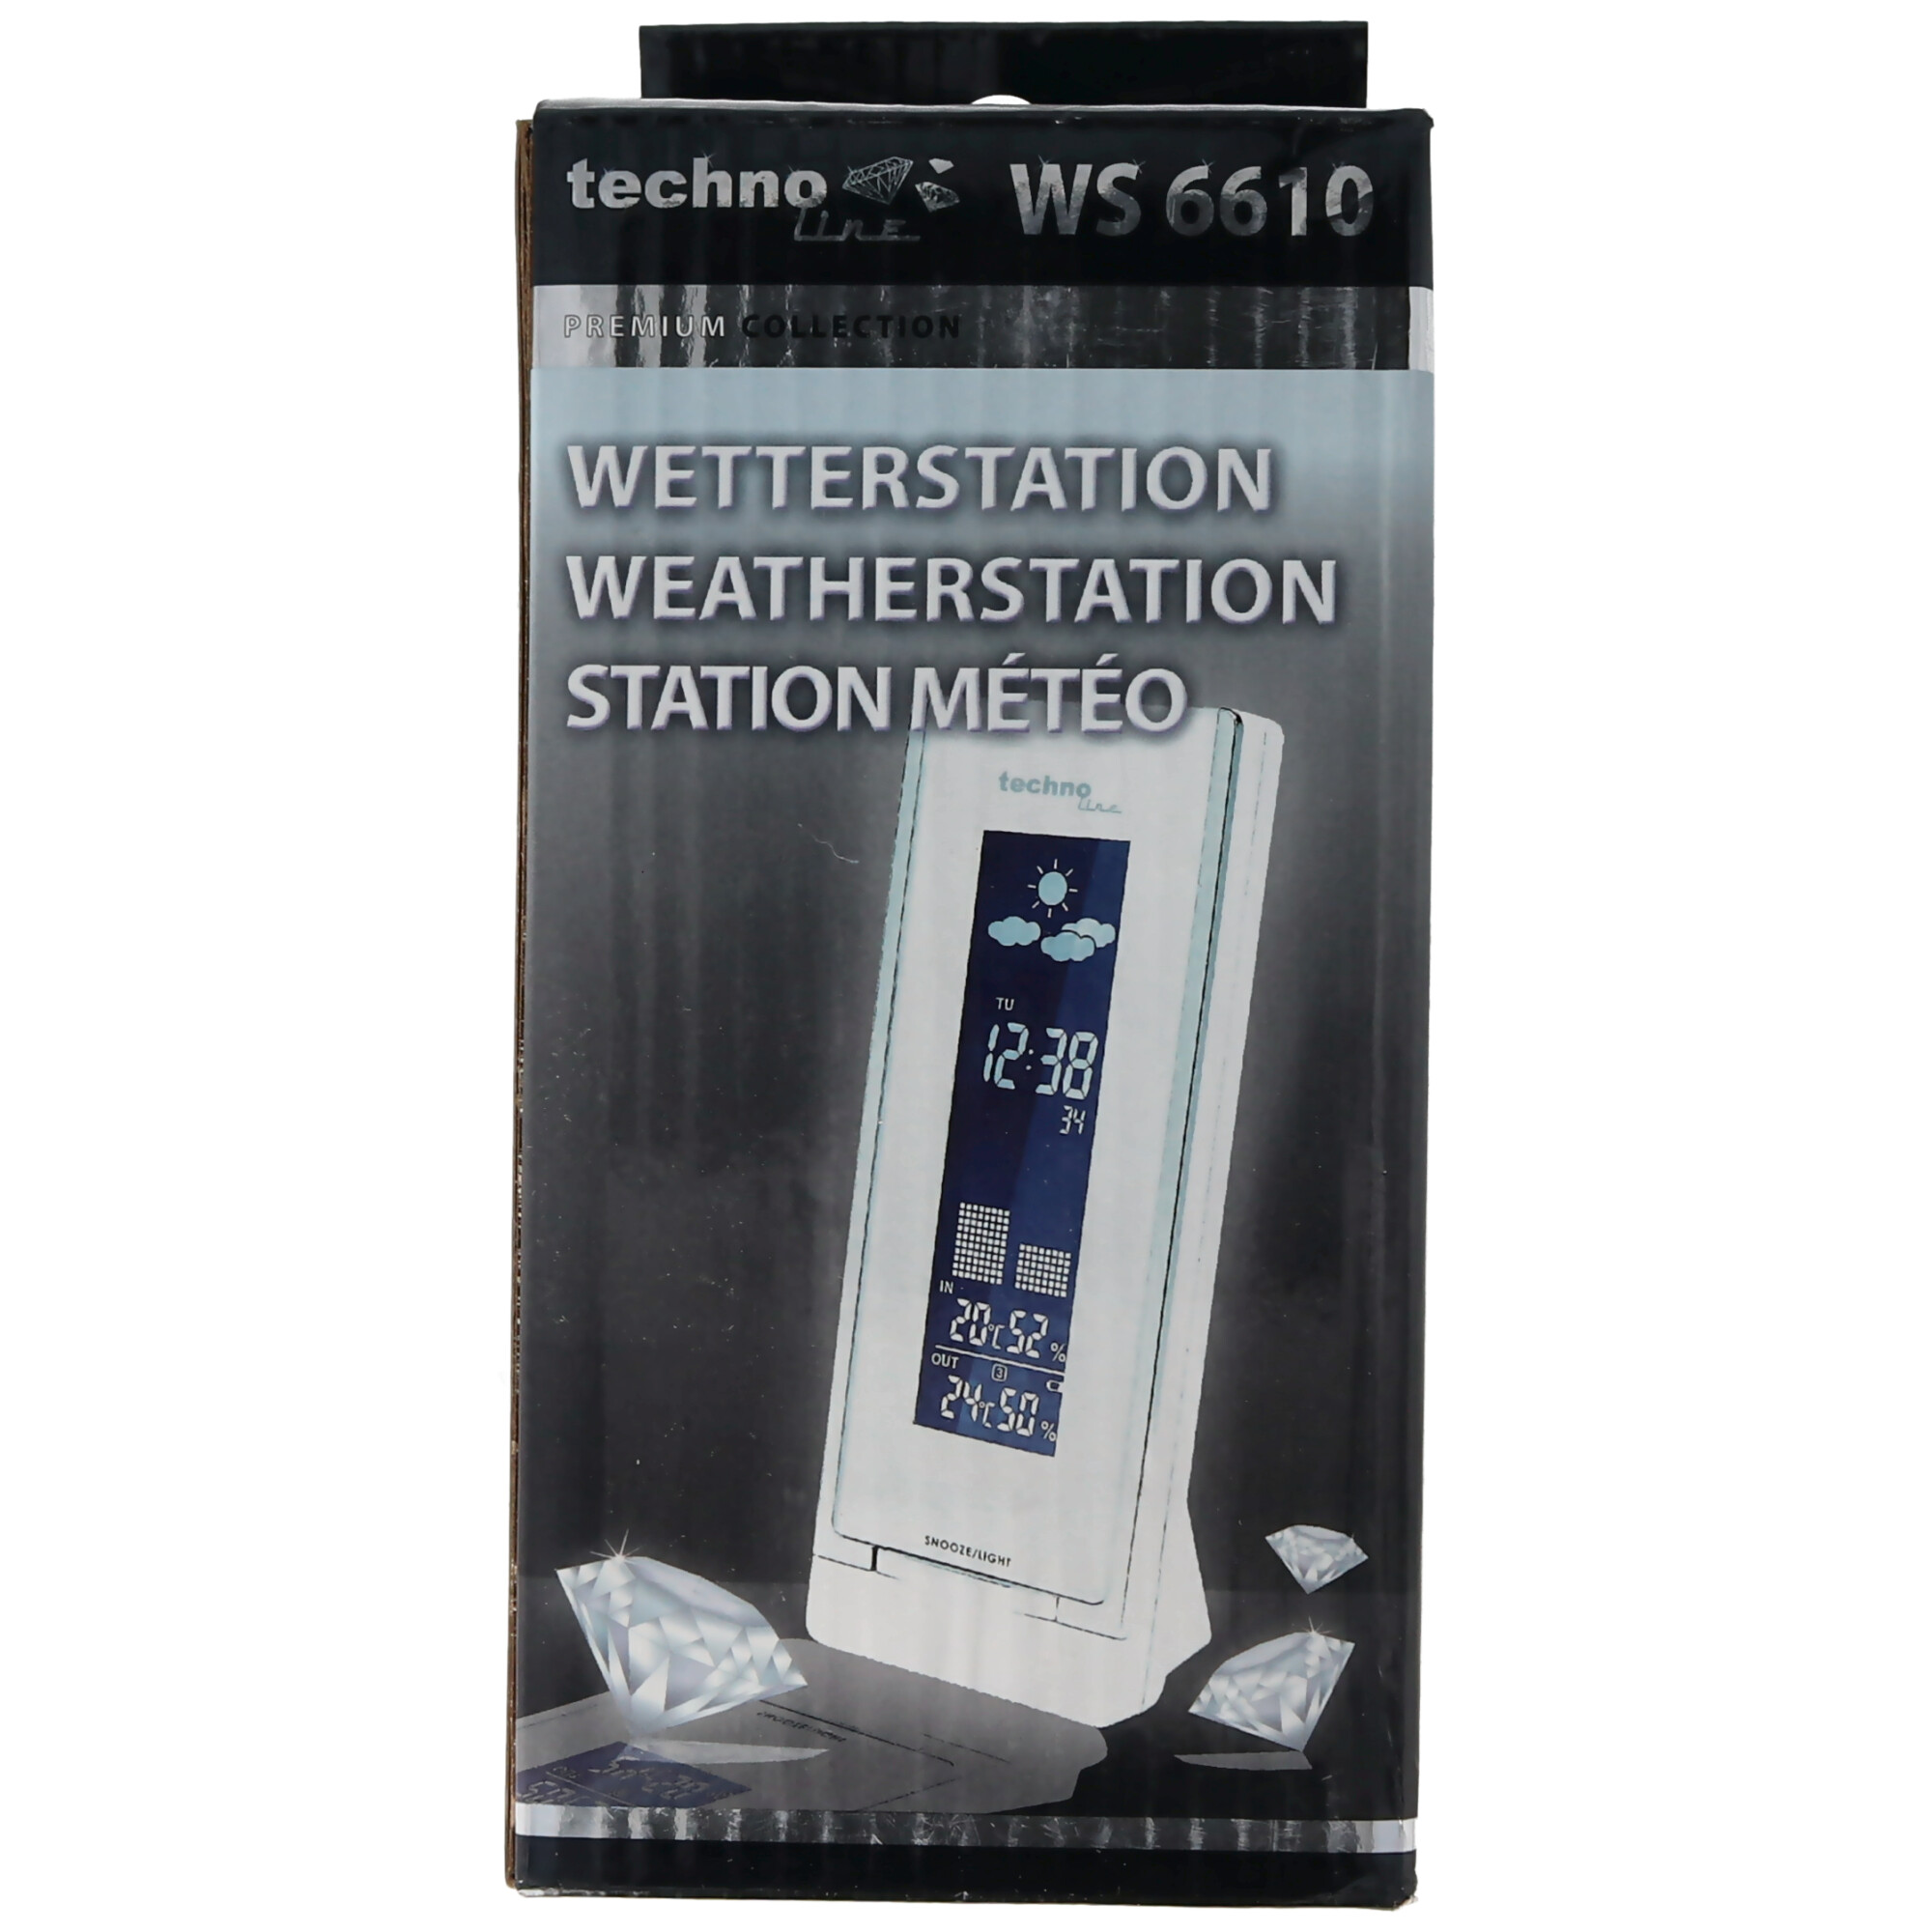 Wetterstation WS6610 mit Luchtfeuchtanzeige für innen und außen und vielen anderen Funktionen